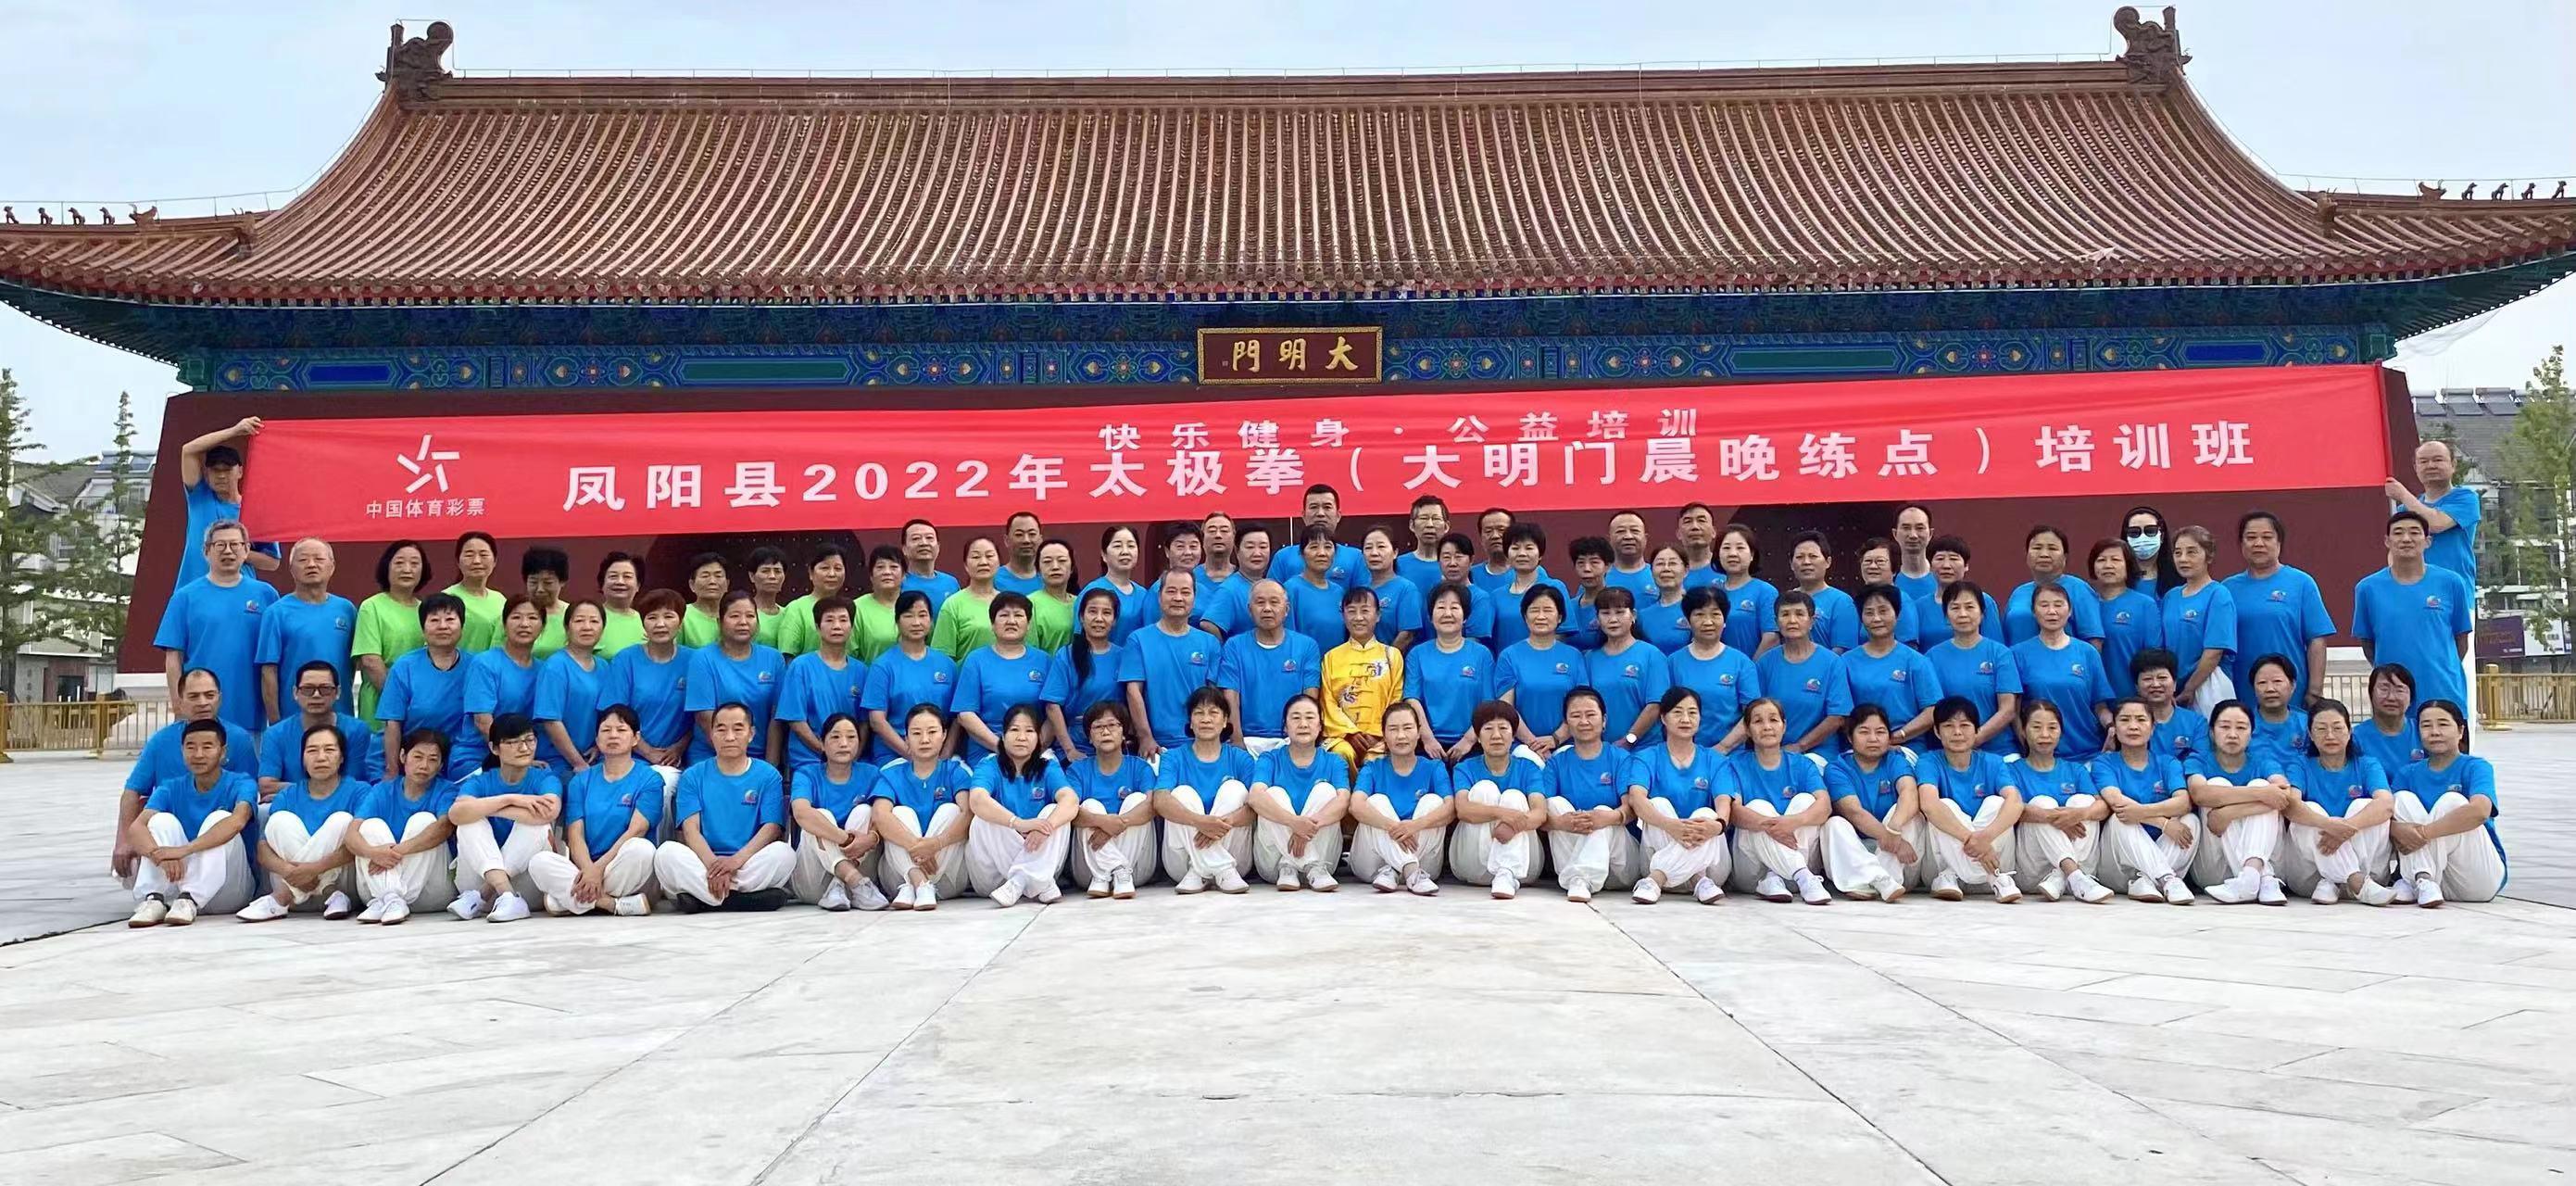 凤阳县举办2022年太极拳培训班。张文文摄